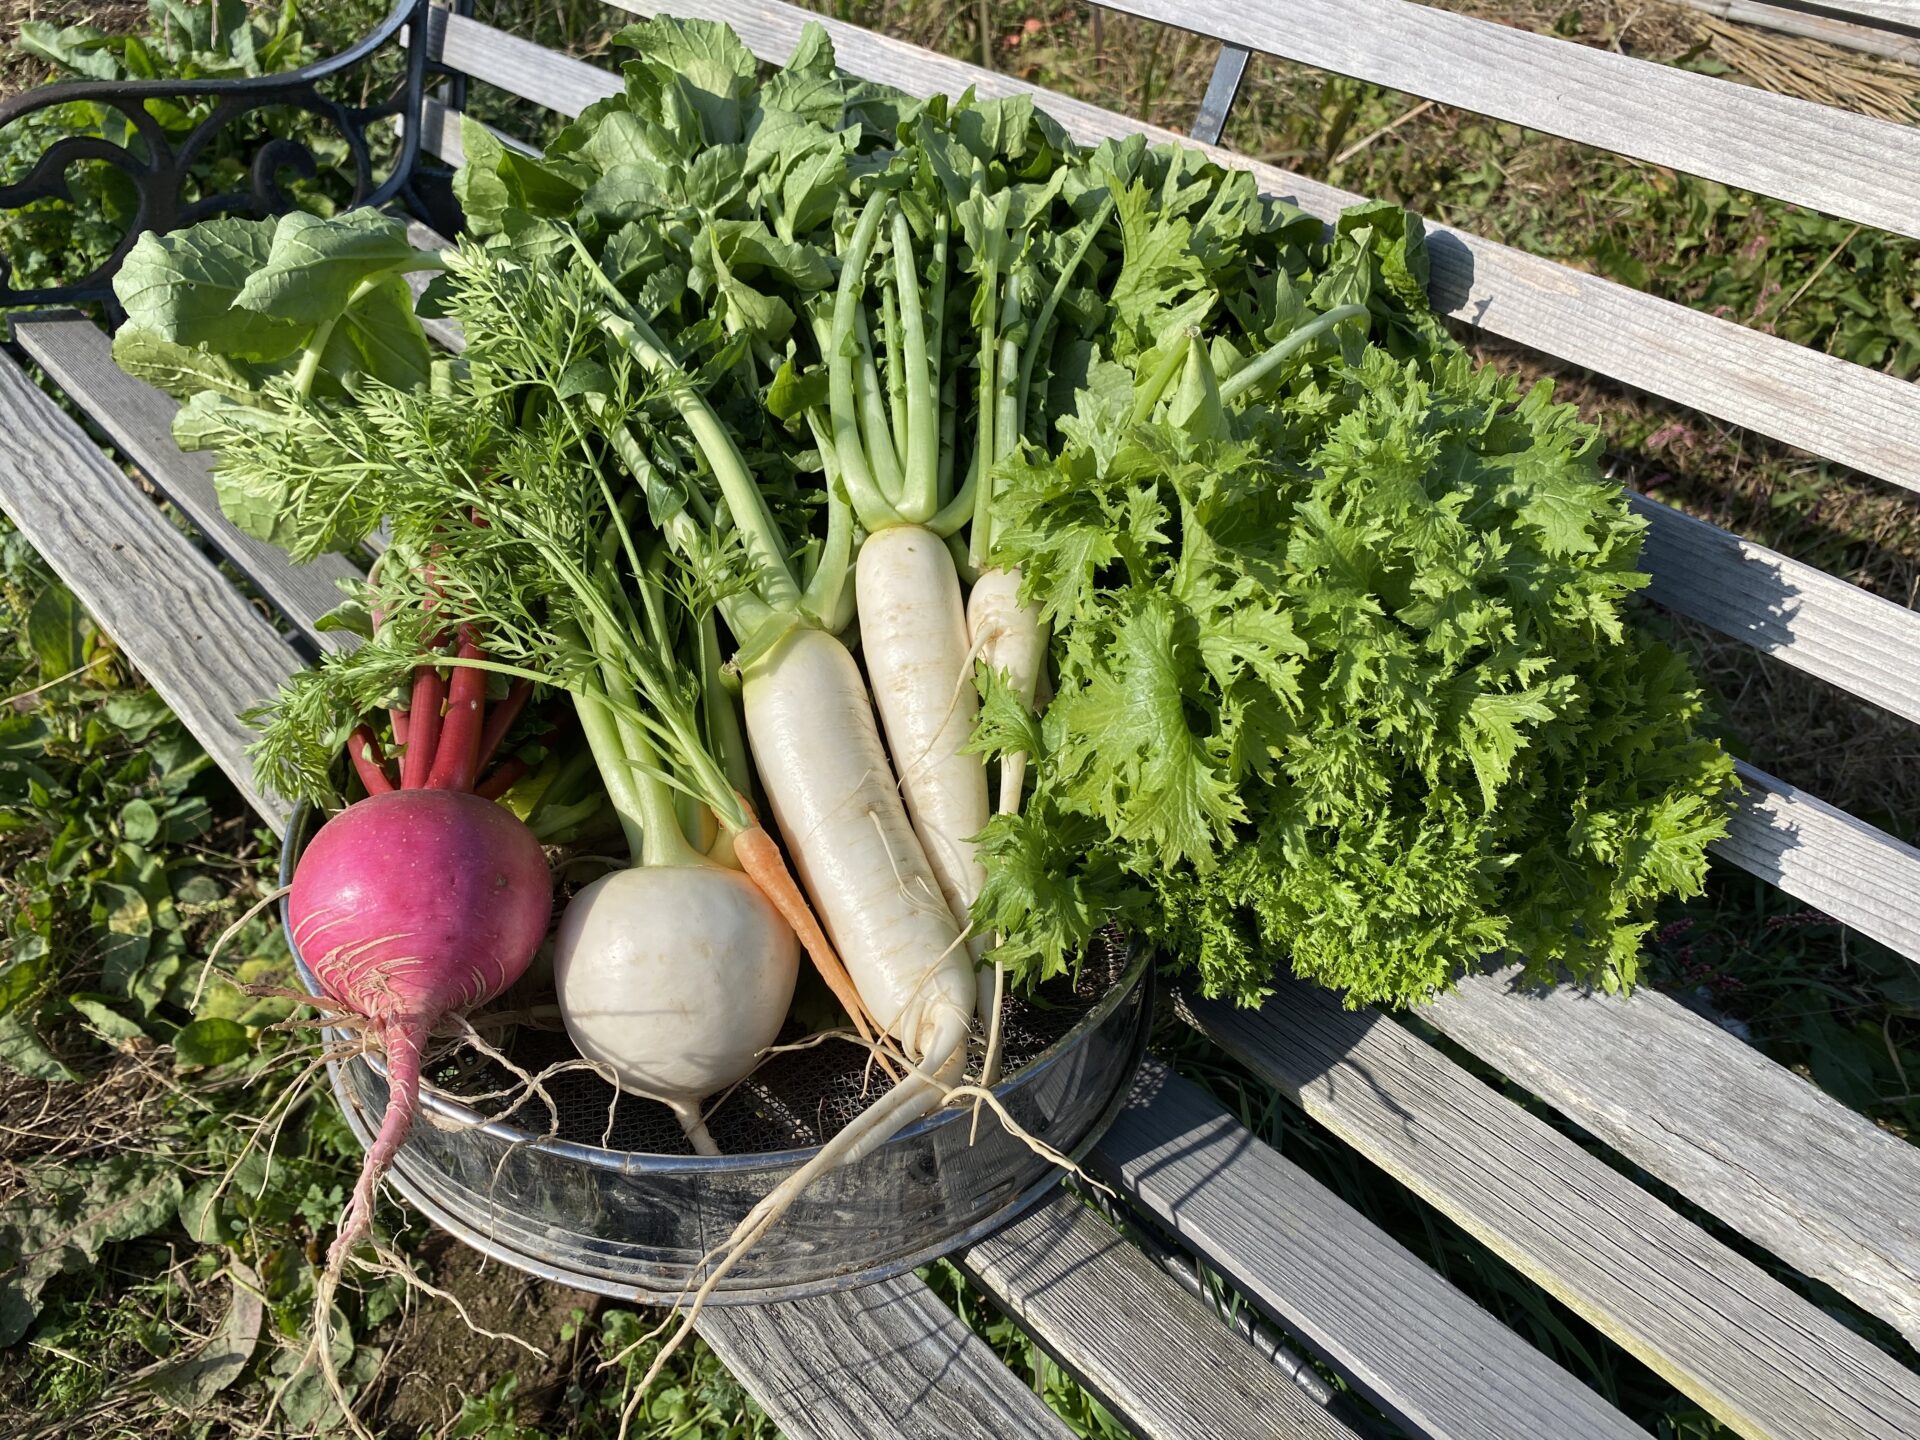 土づくり 野菜を作る上での重要ポイント 楽しい貸し農園ライフブログ